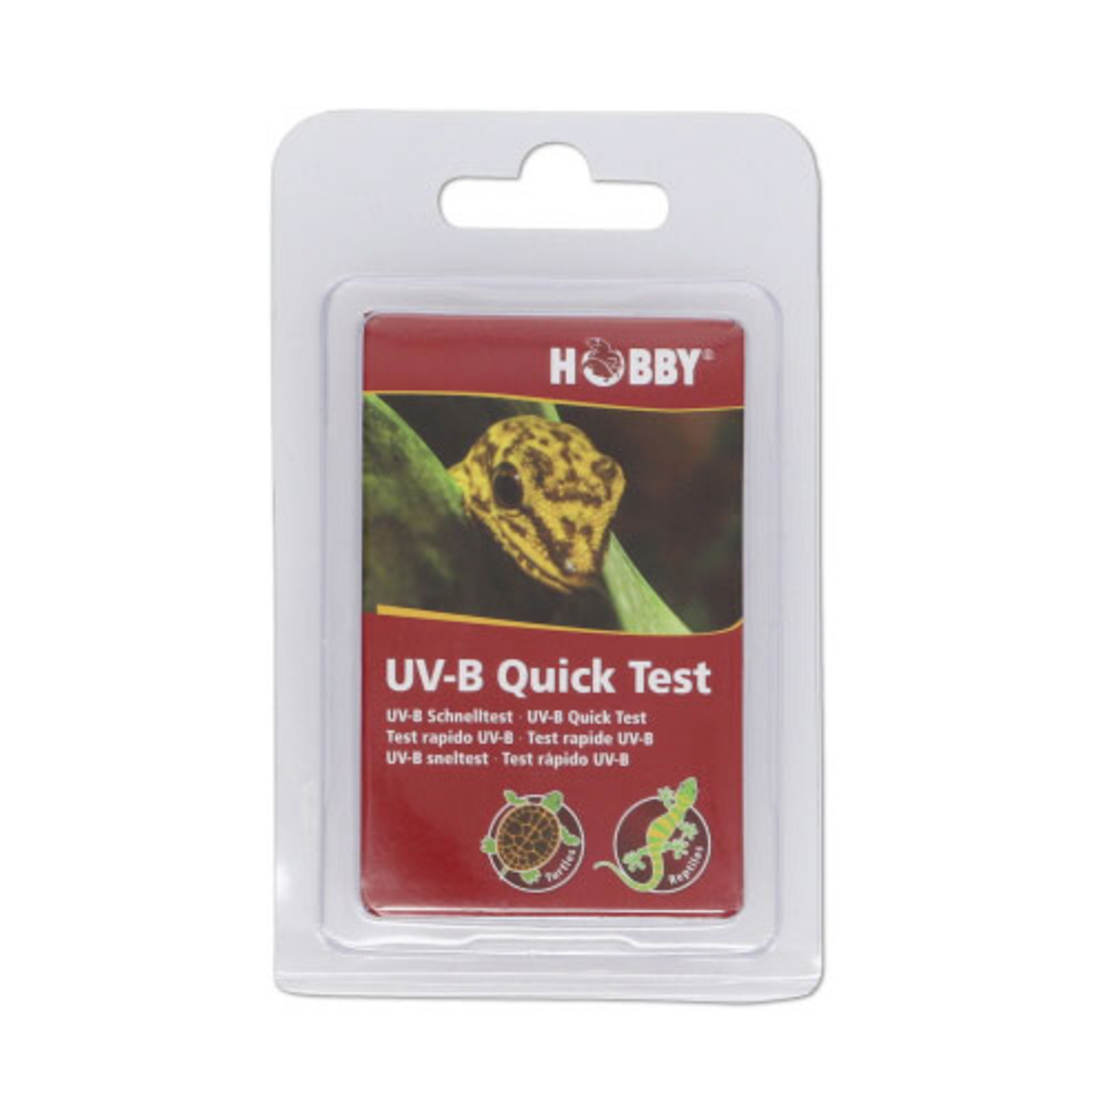 נייר לבדיקת רמת UVB שתי יח', הובי | UV-B Quick Test